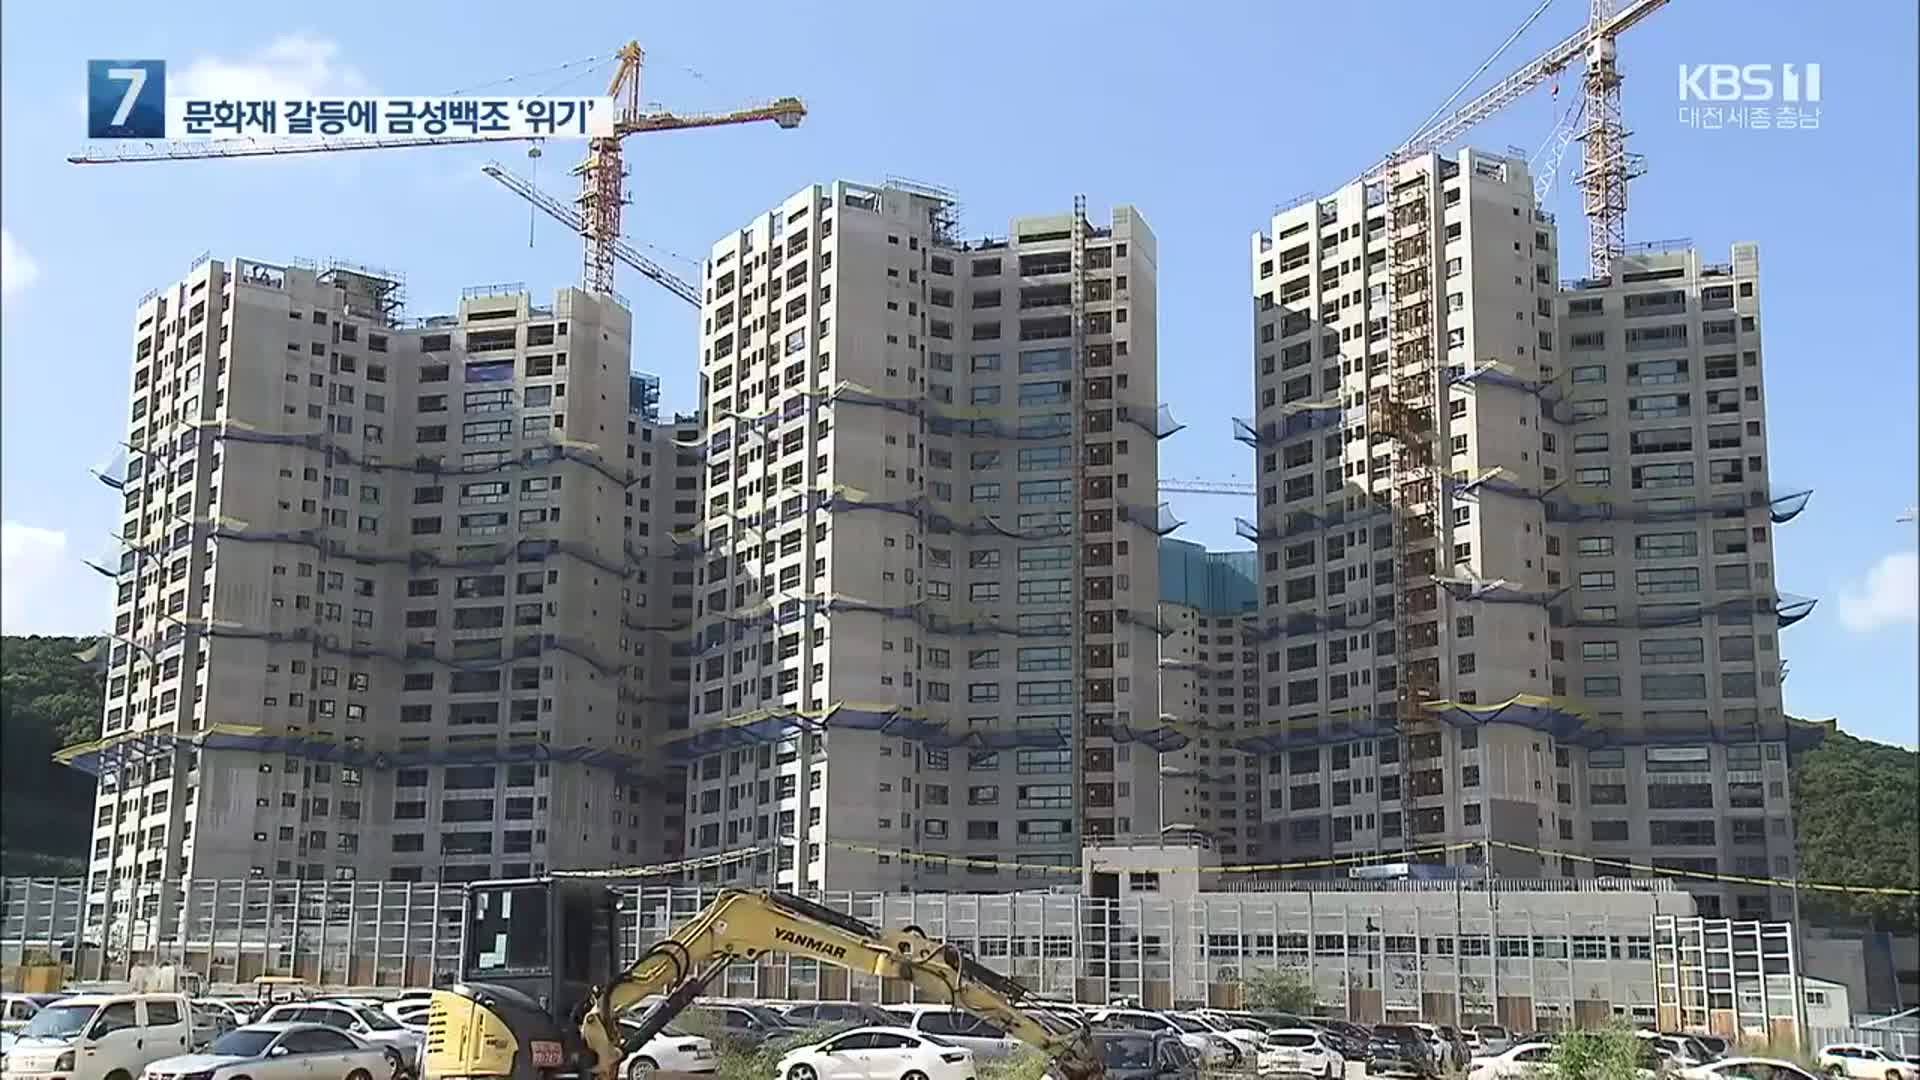 세계문화유산 앞 금성백조 아파트 철거 위기